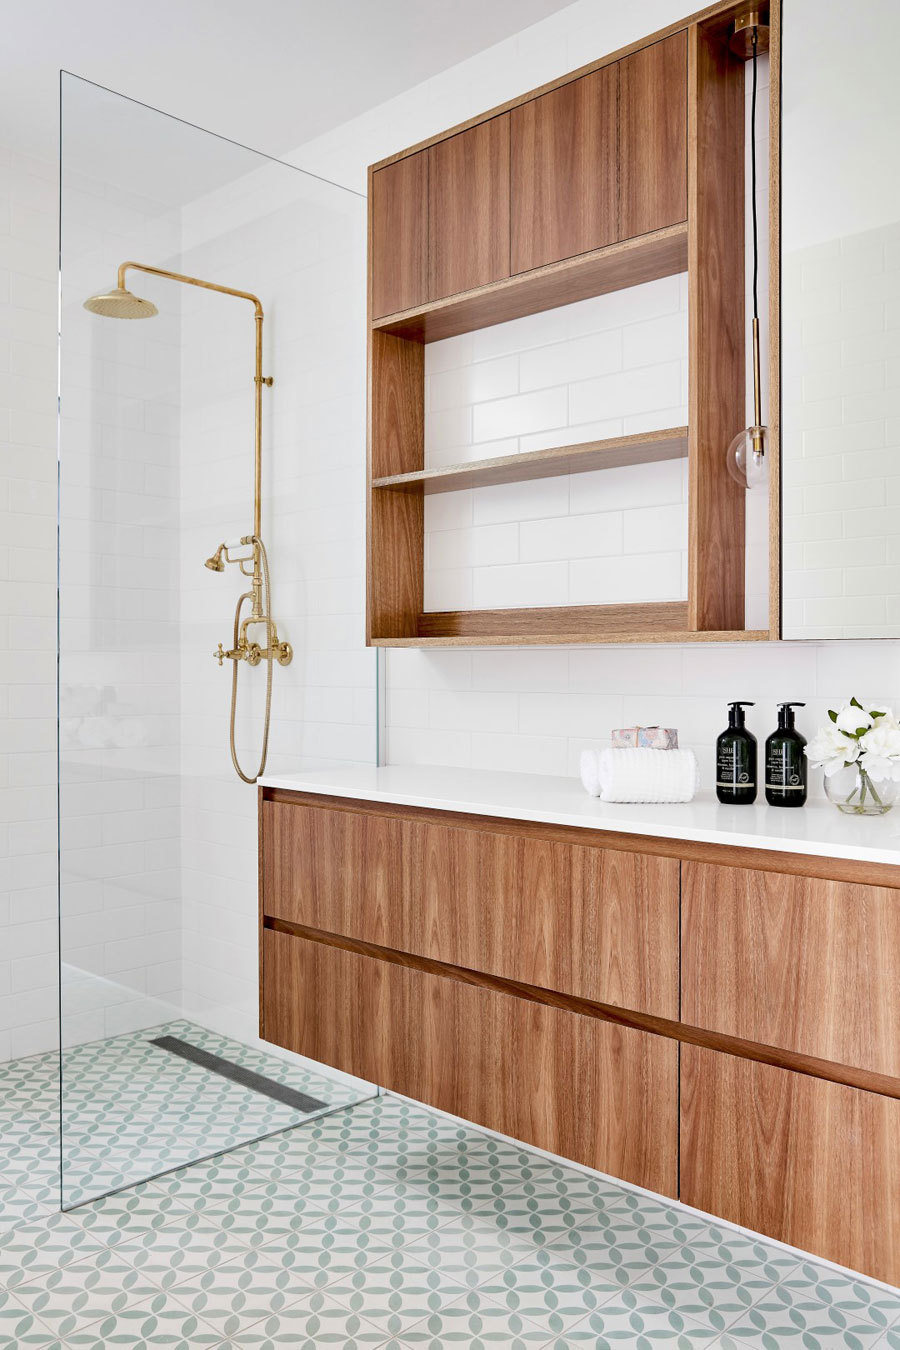 Deze kleine badkamer is super leuk ingericht met patroontegels en houten meubel